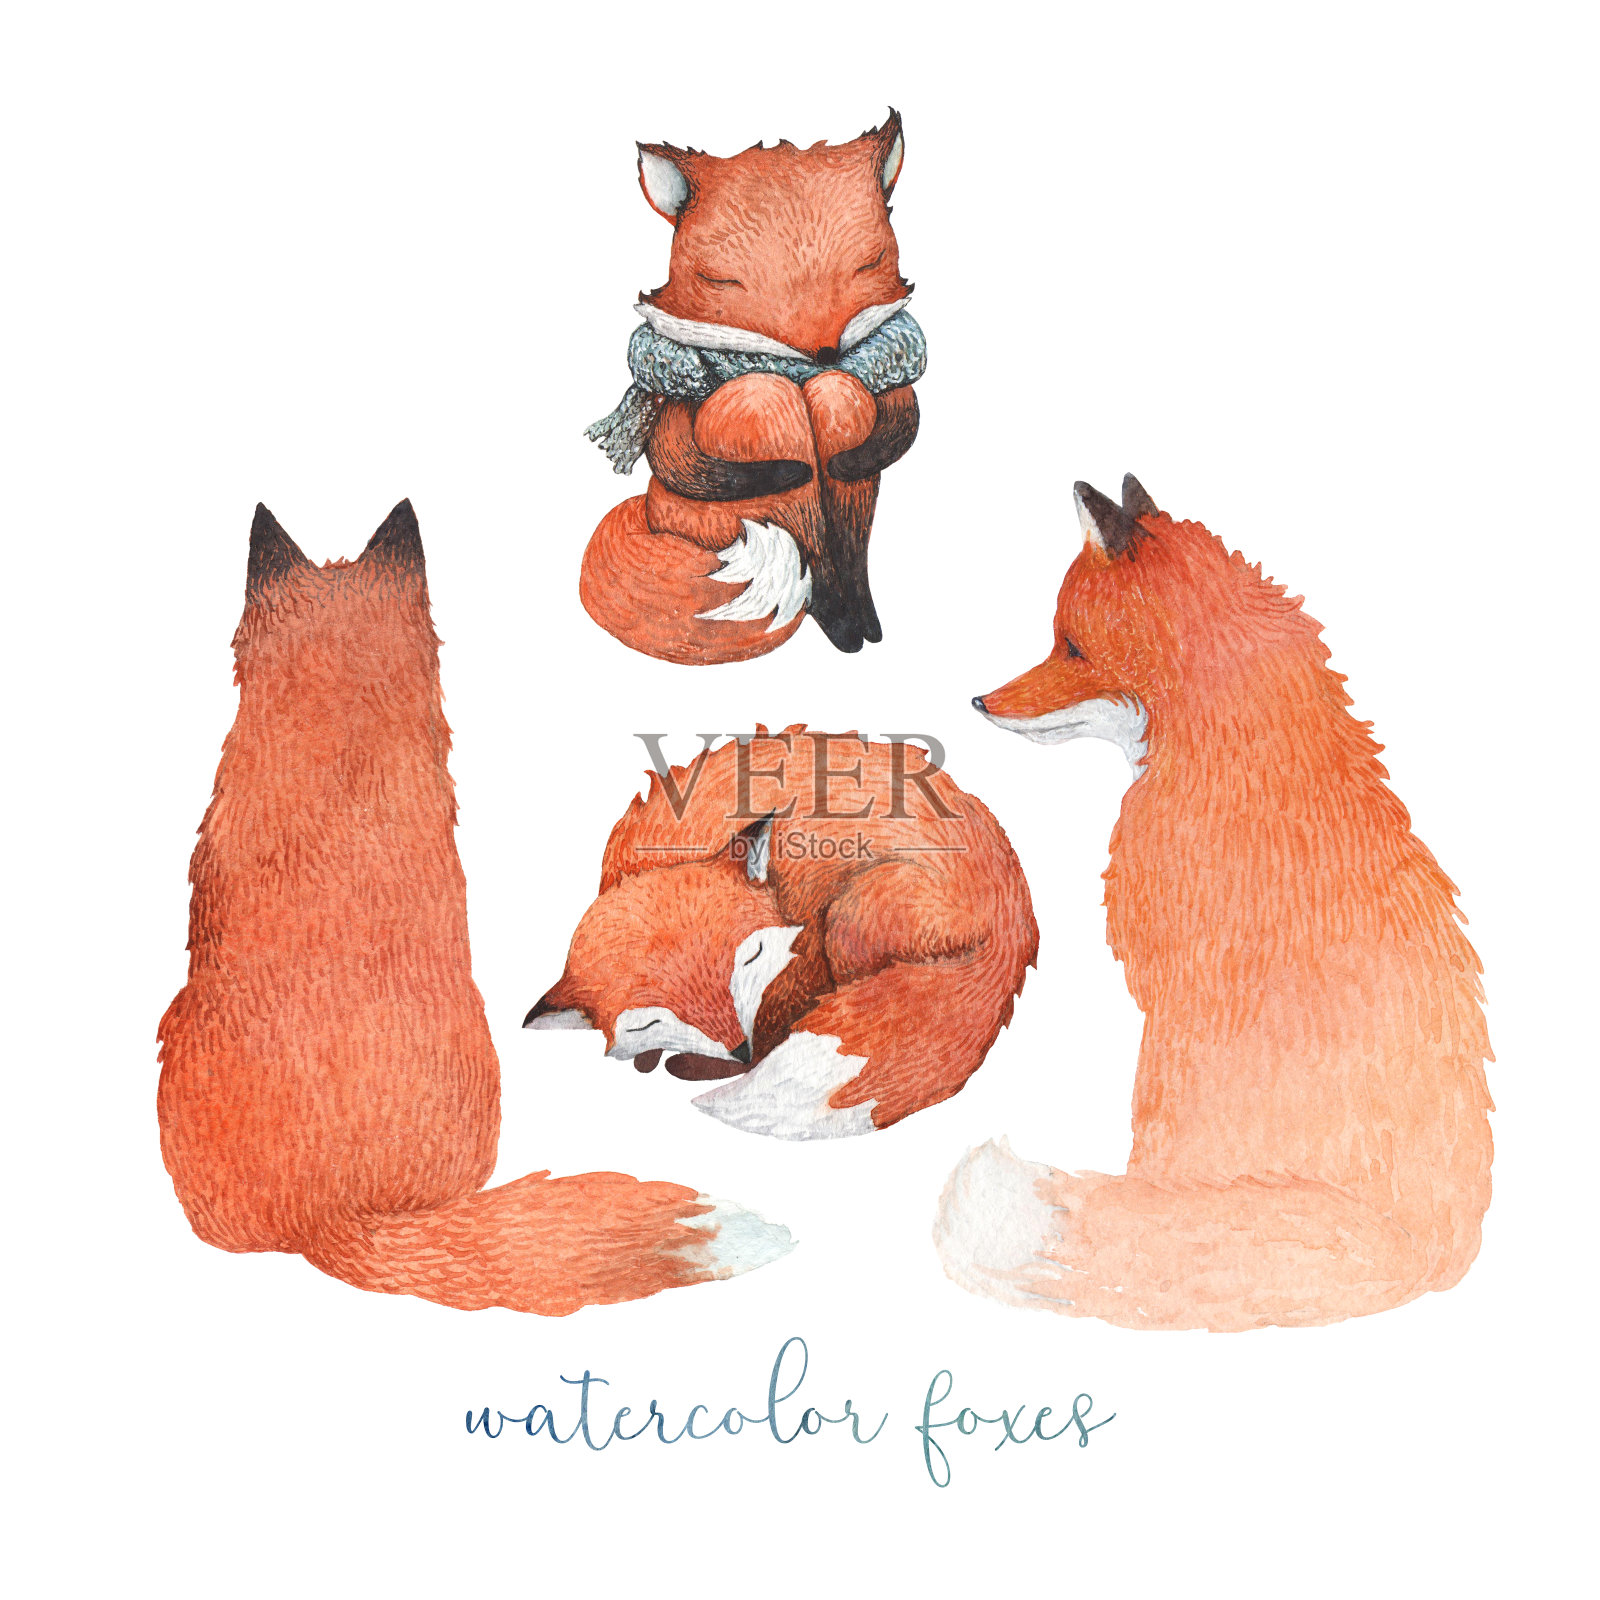 一组水彩画狐狸插画图片素材